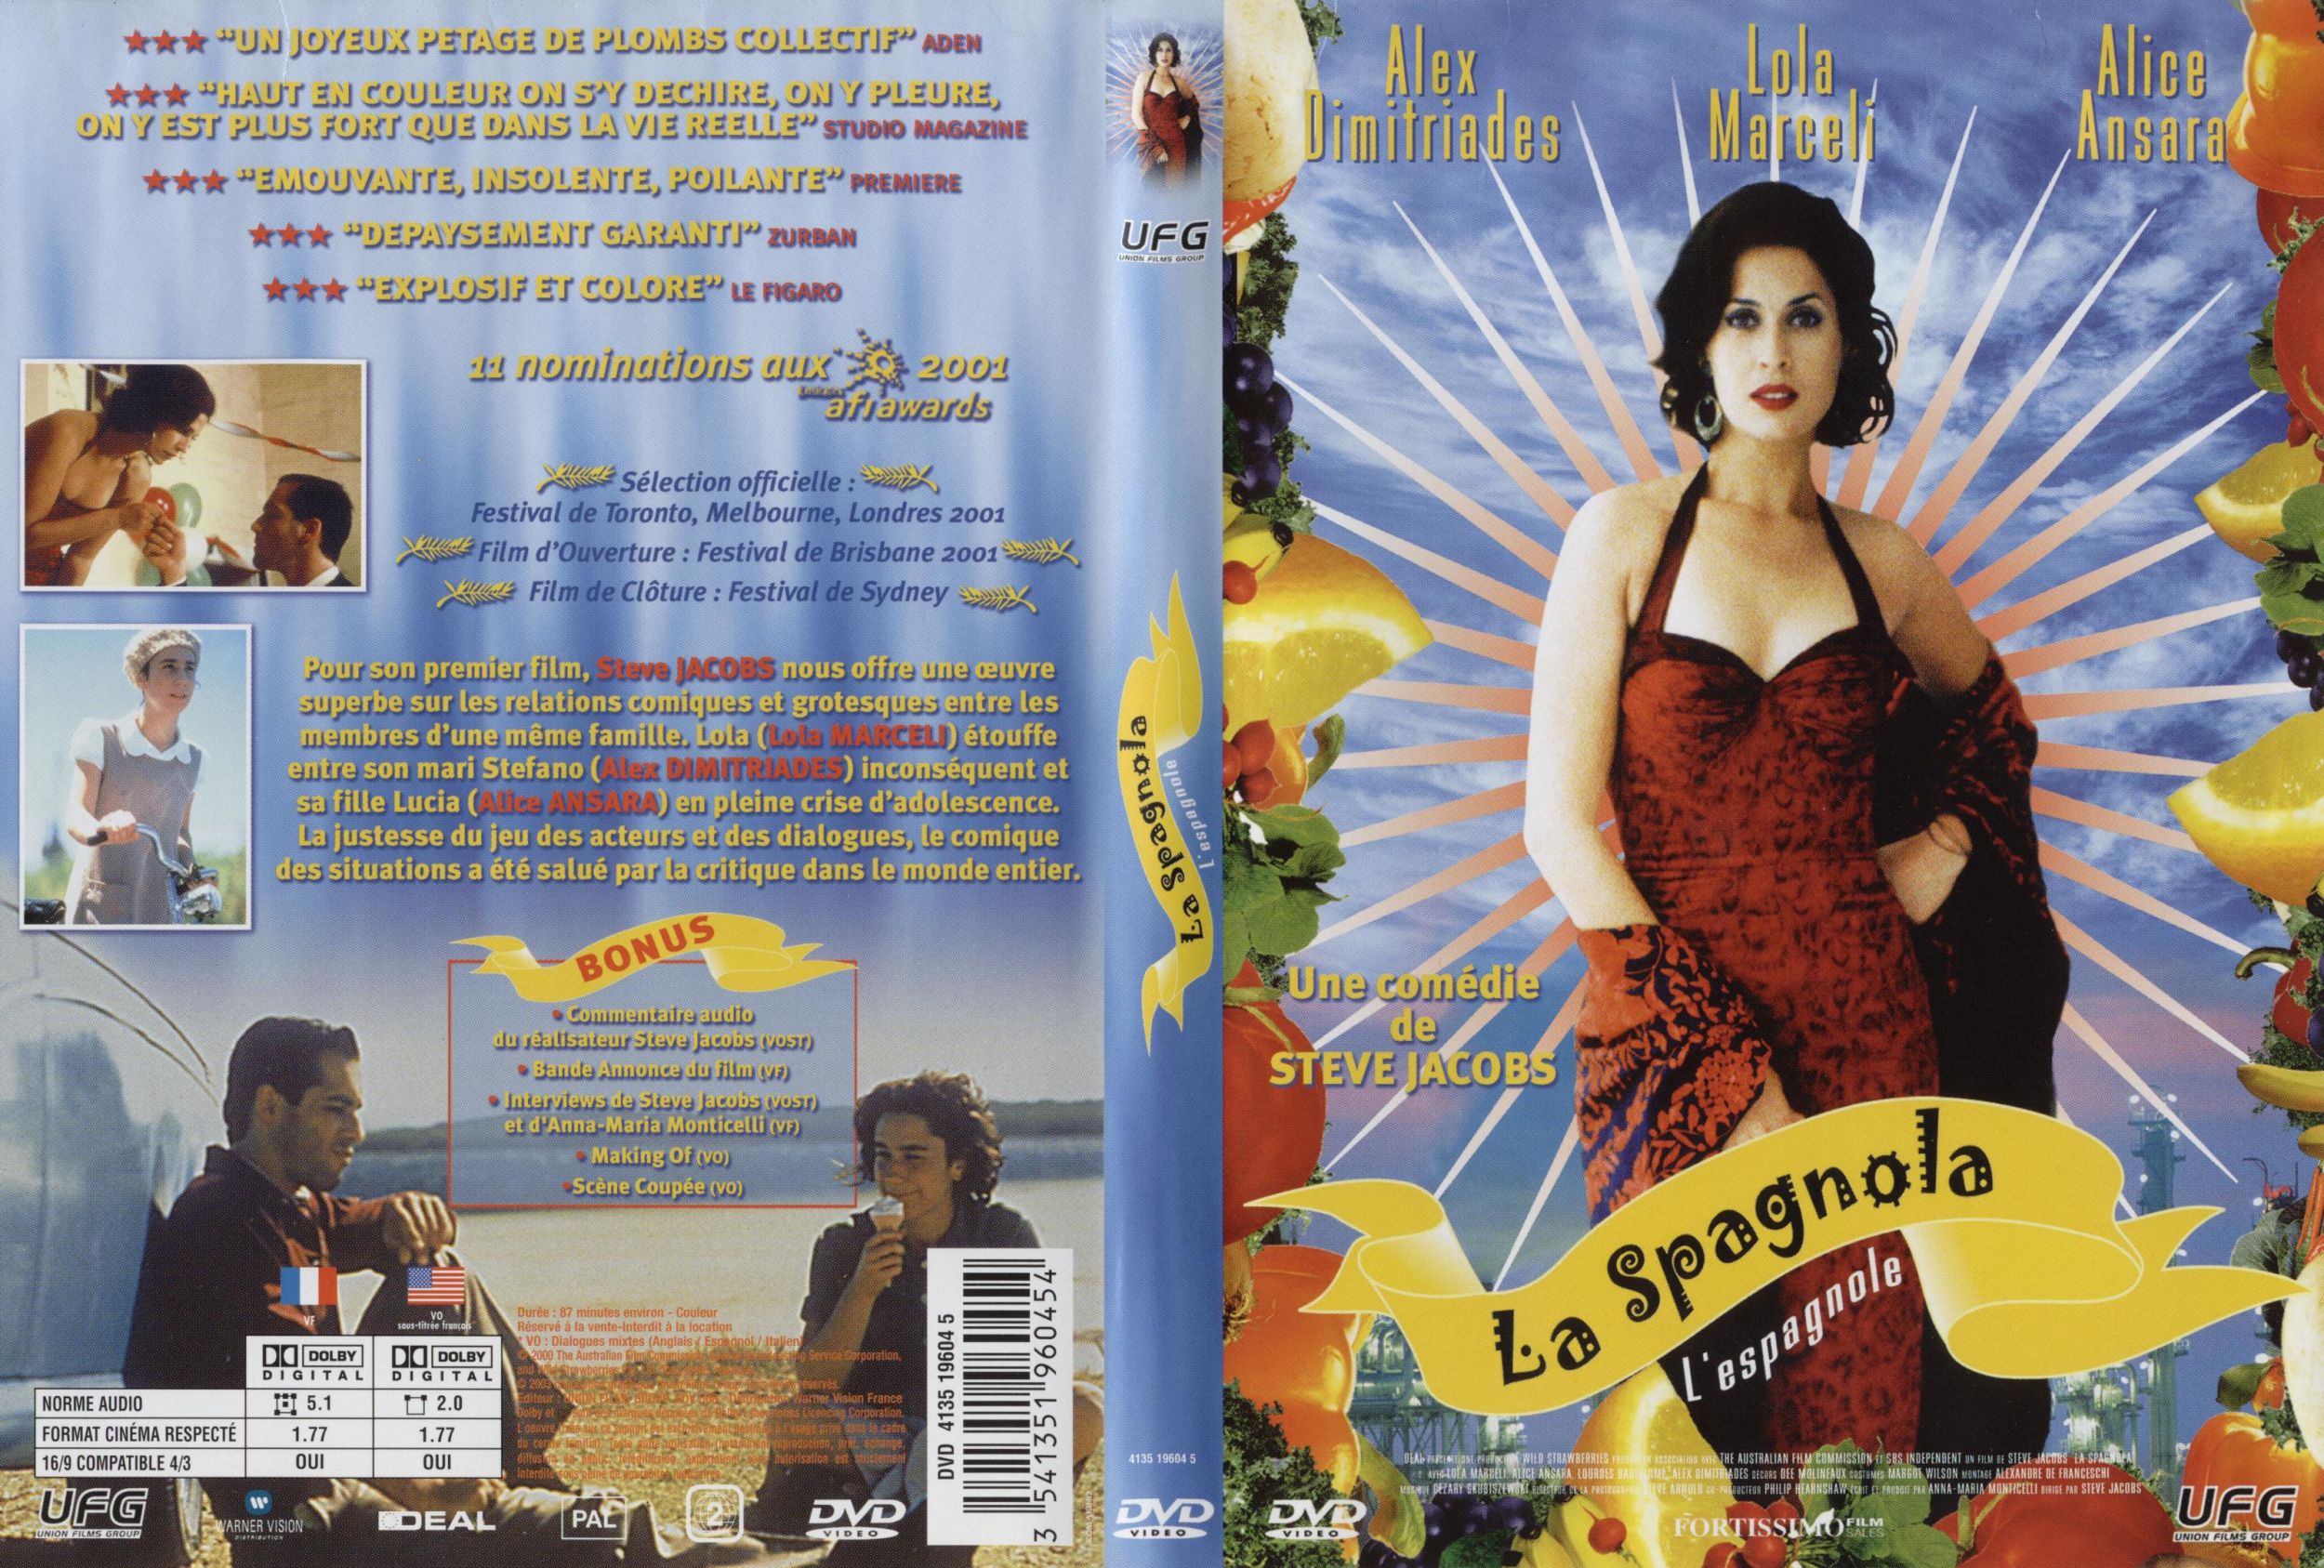 Jaquette DVD La spagnola